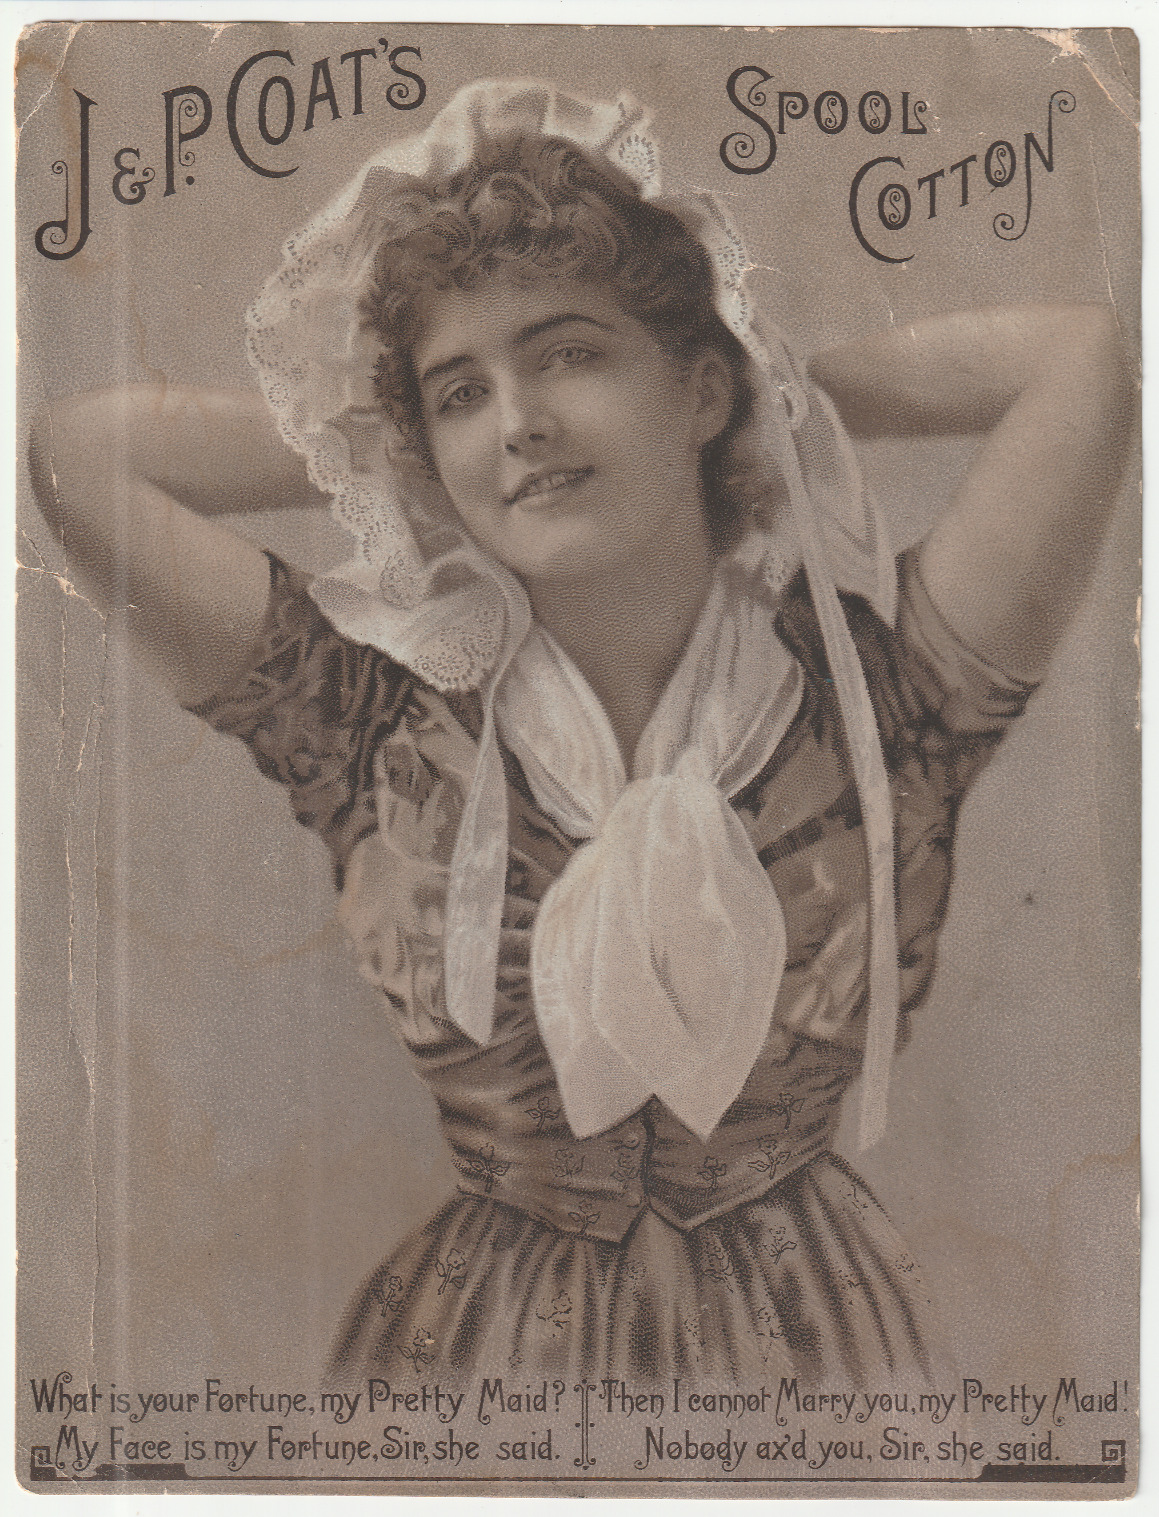 RARE 1880s J & P Coats Sensual Pretty Maid Victorian Trade Card Spool Cotton